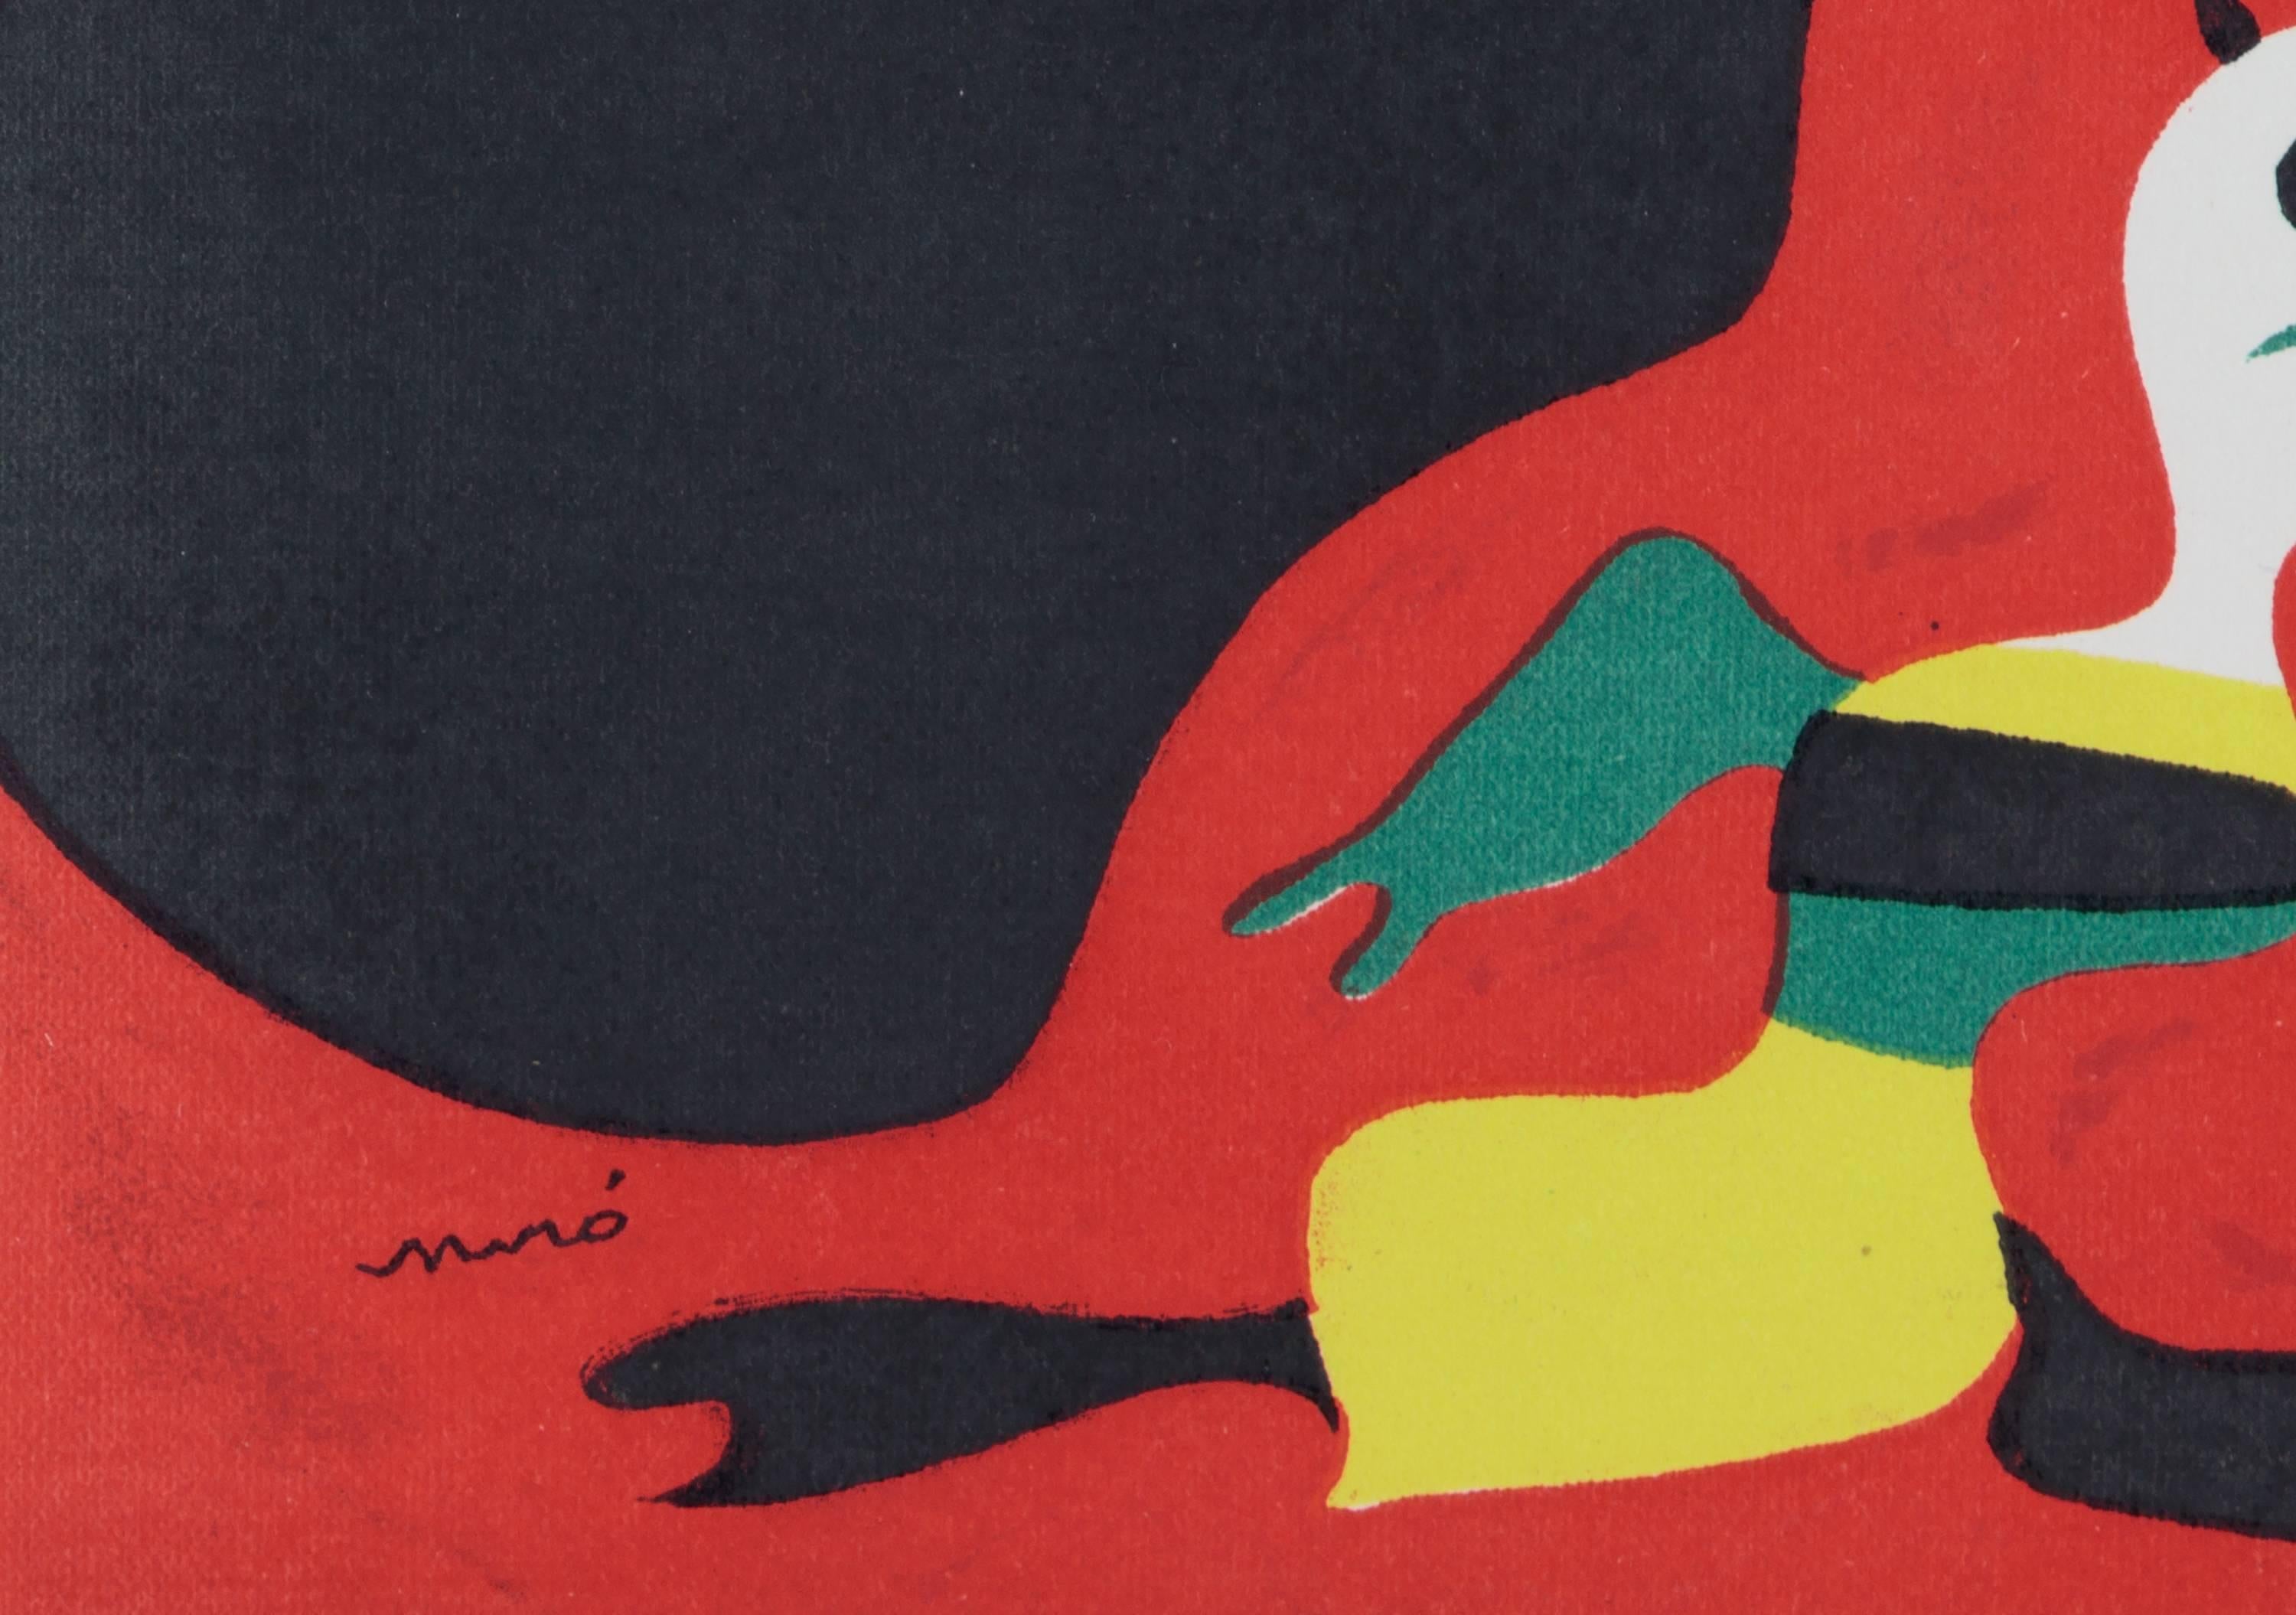 L'Ete' - Print by Joan Miró